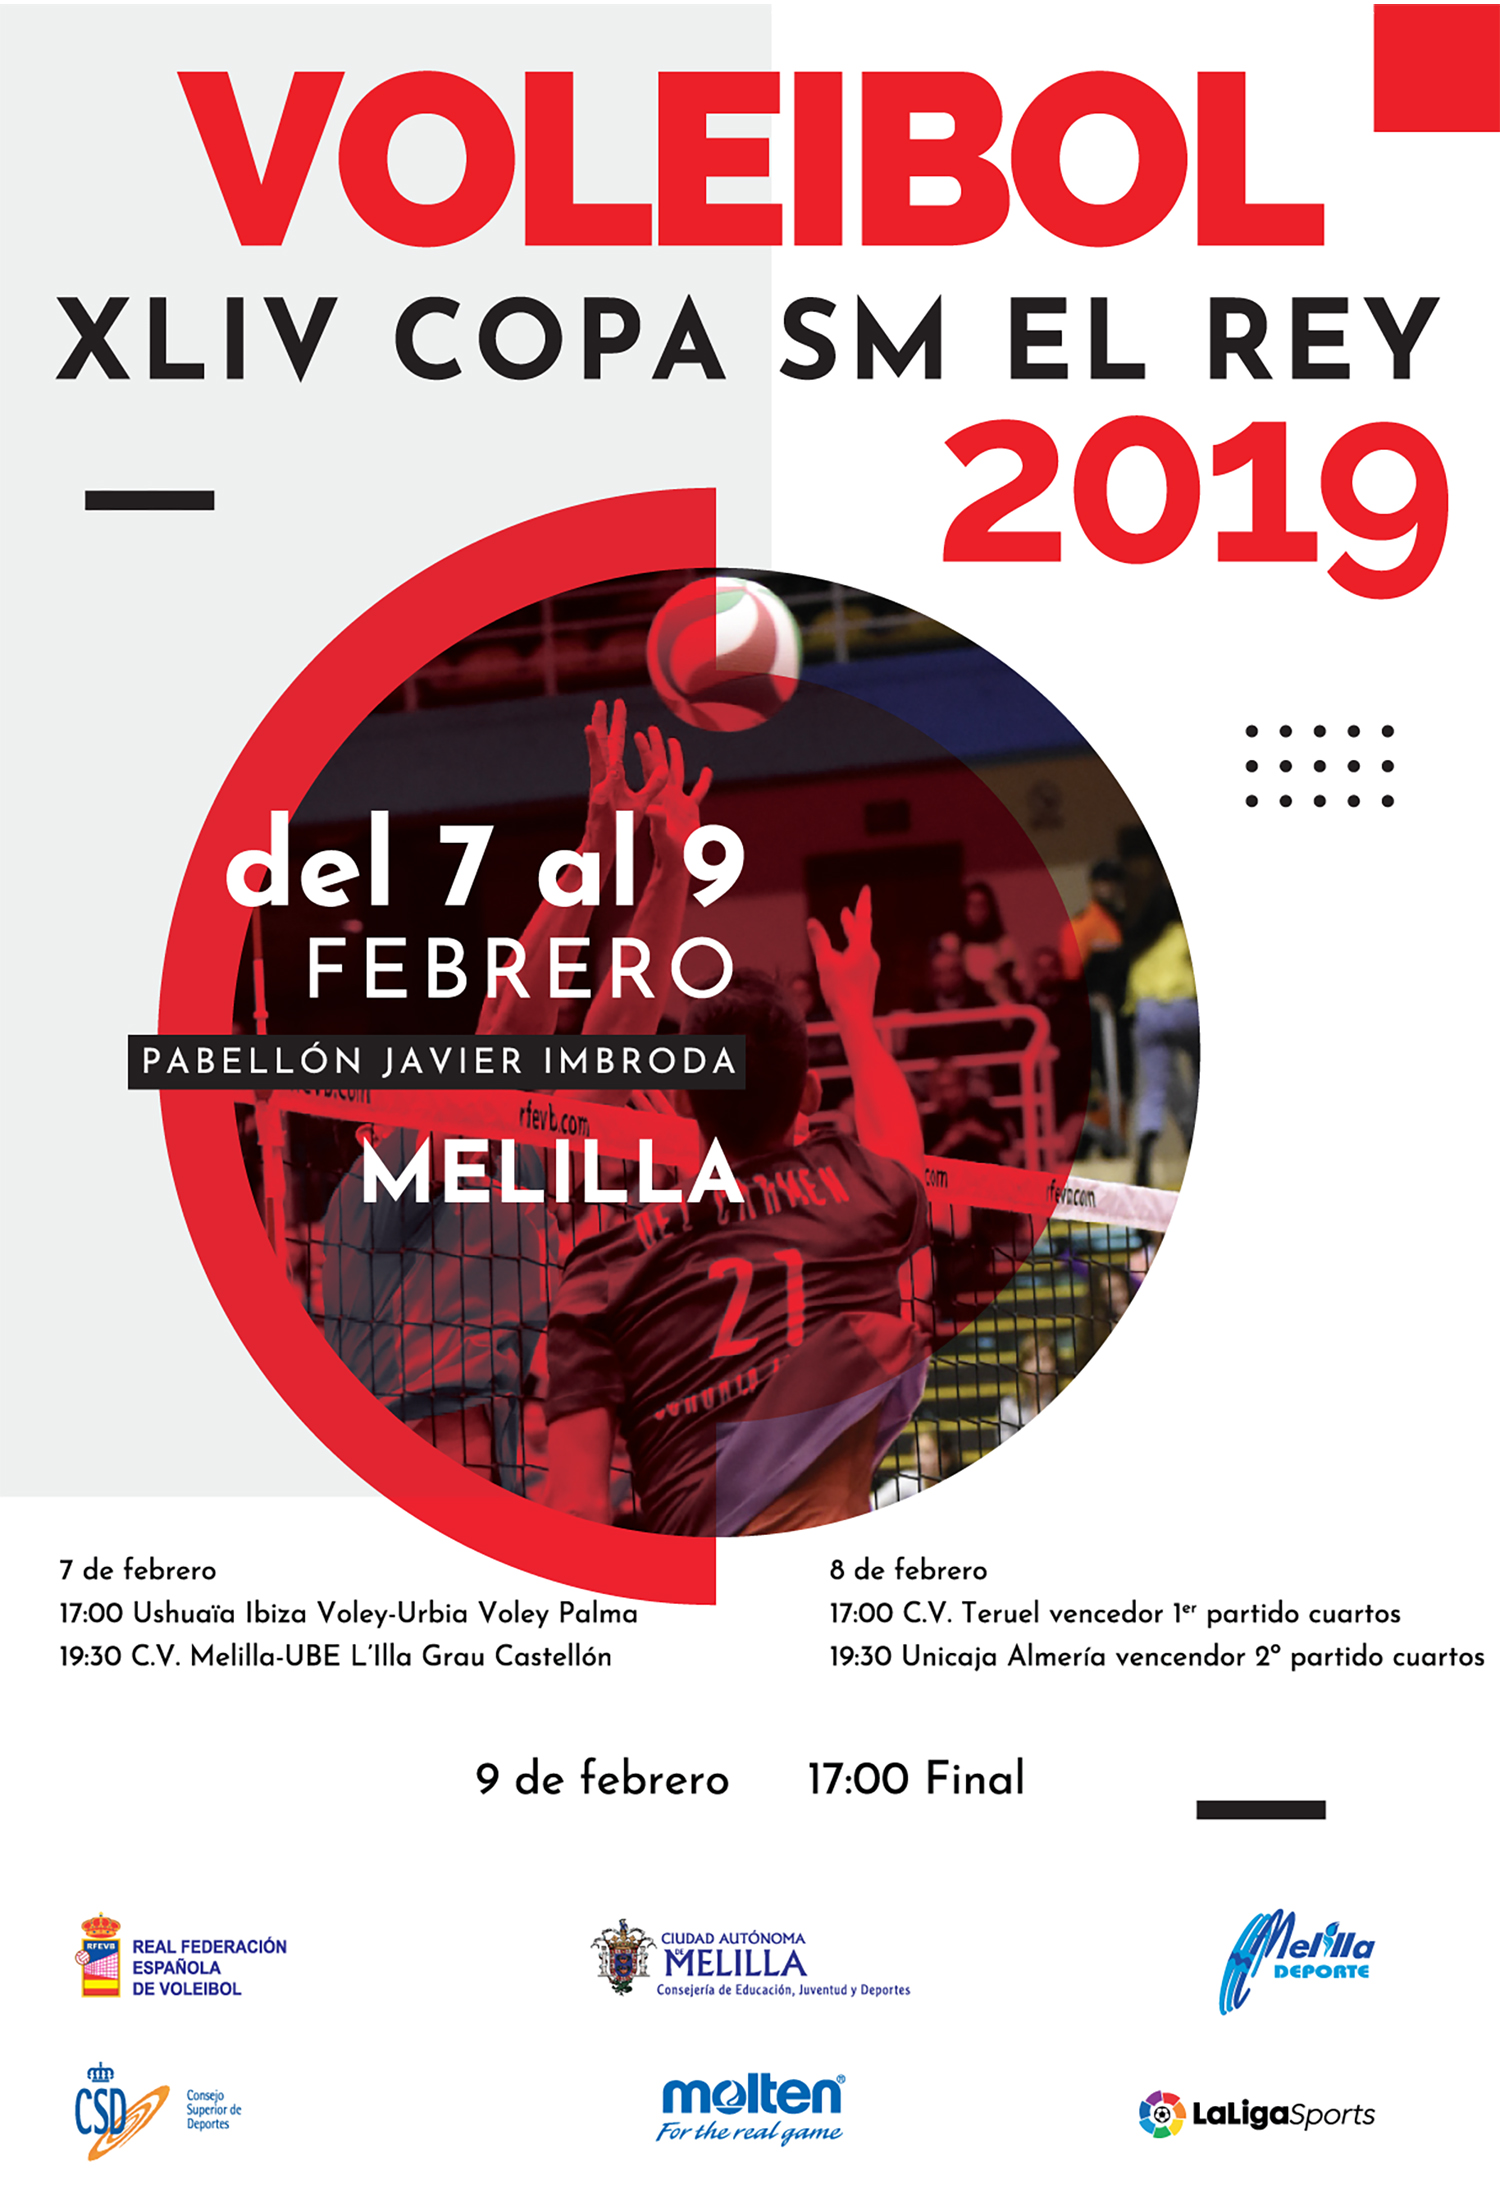 Voleibol XLIV Copa SM el Rey 2019